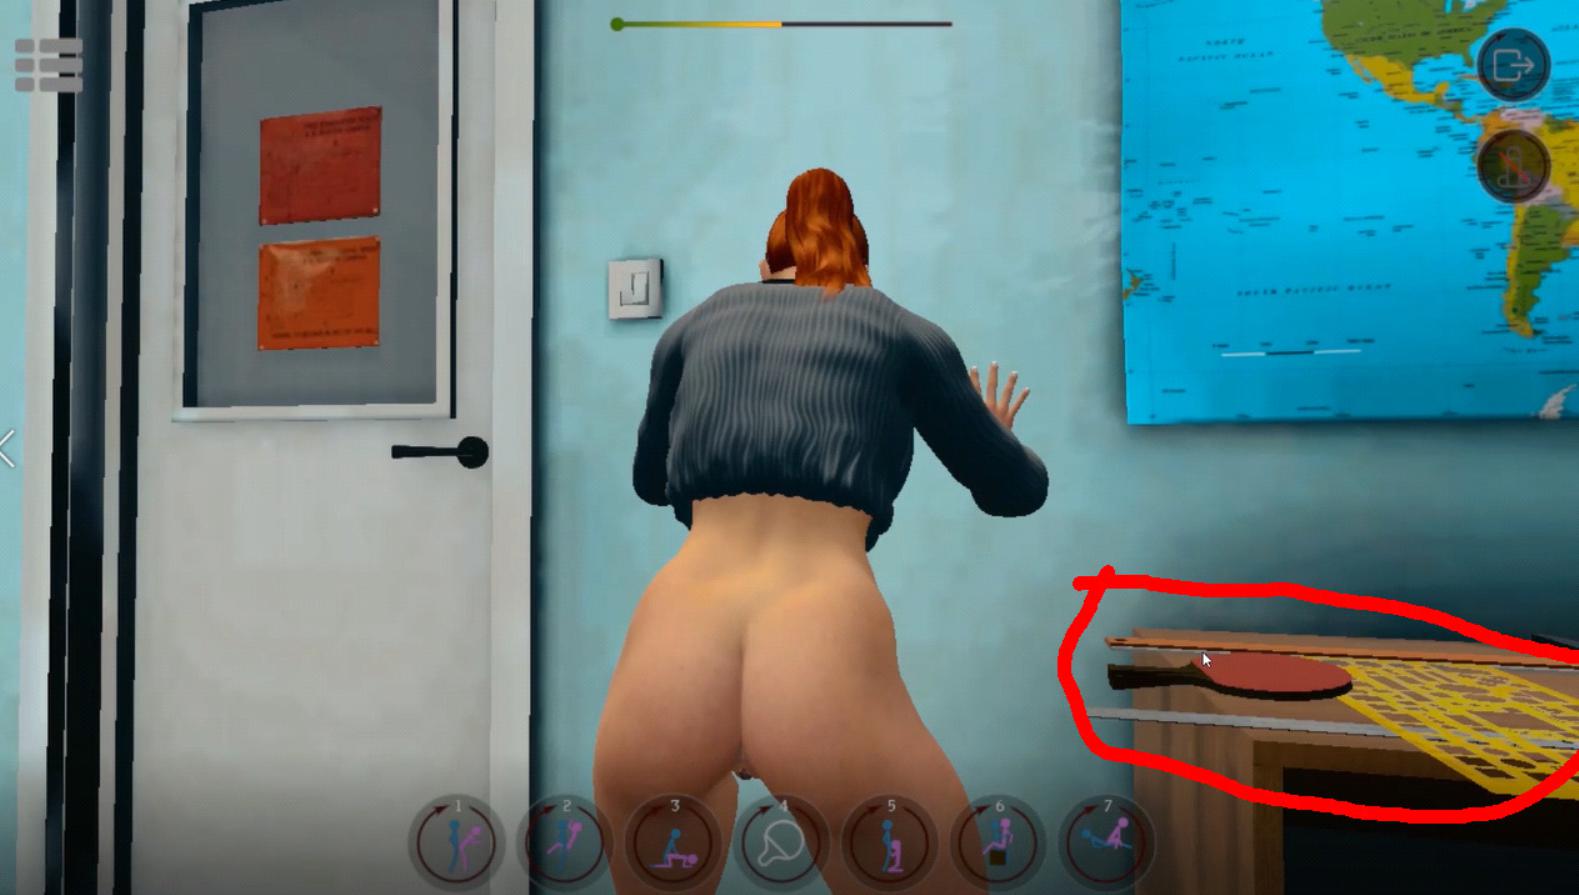 Futanari Spanking Her Ass - SinVR Game Playthrough